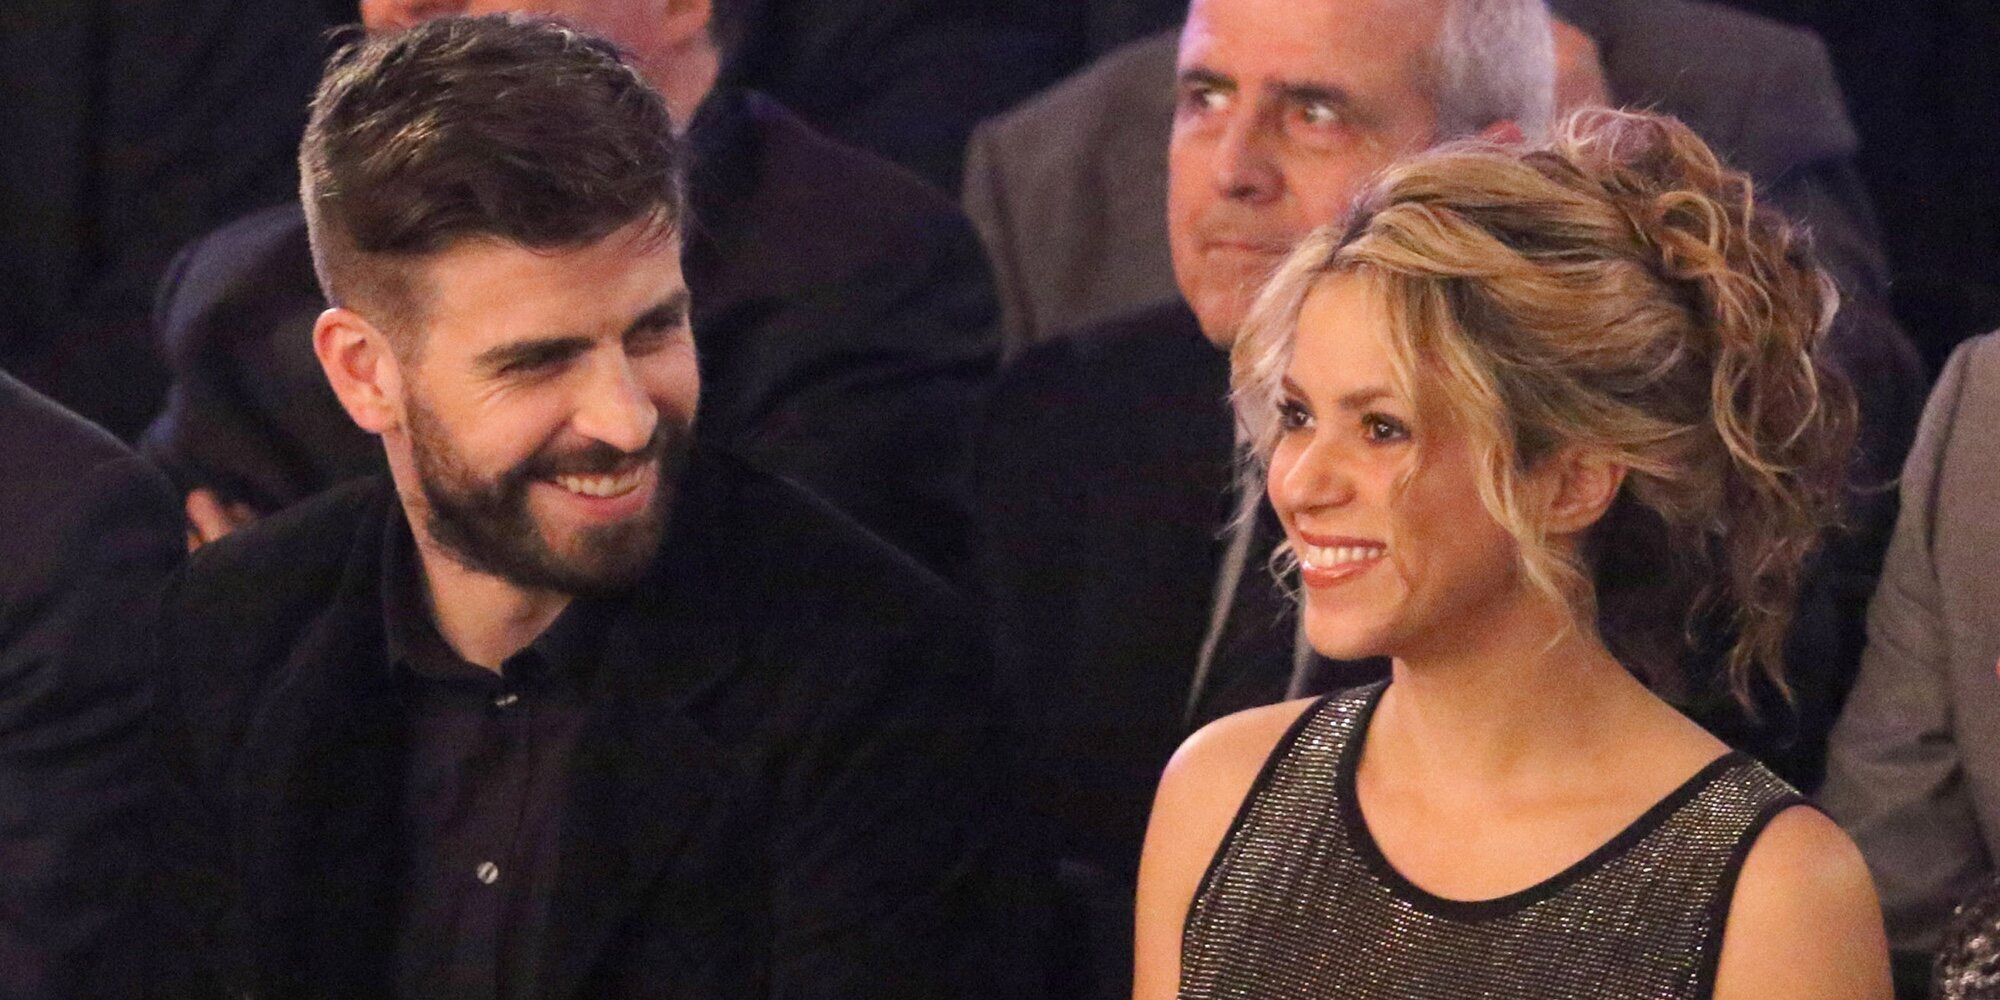 Los detalles del acuerdo entre Shakira y Gerard Piqué por sus hijos: días de visita y vacaciones compartidas